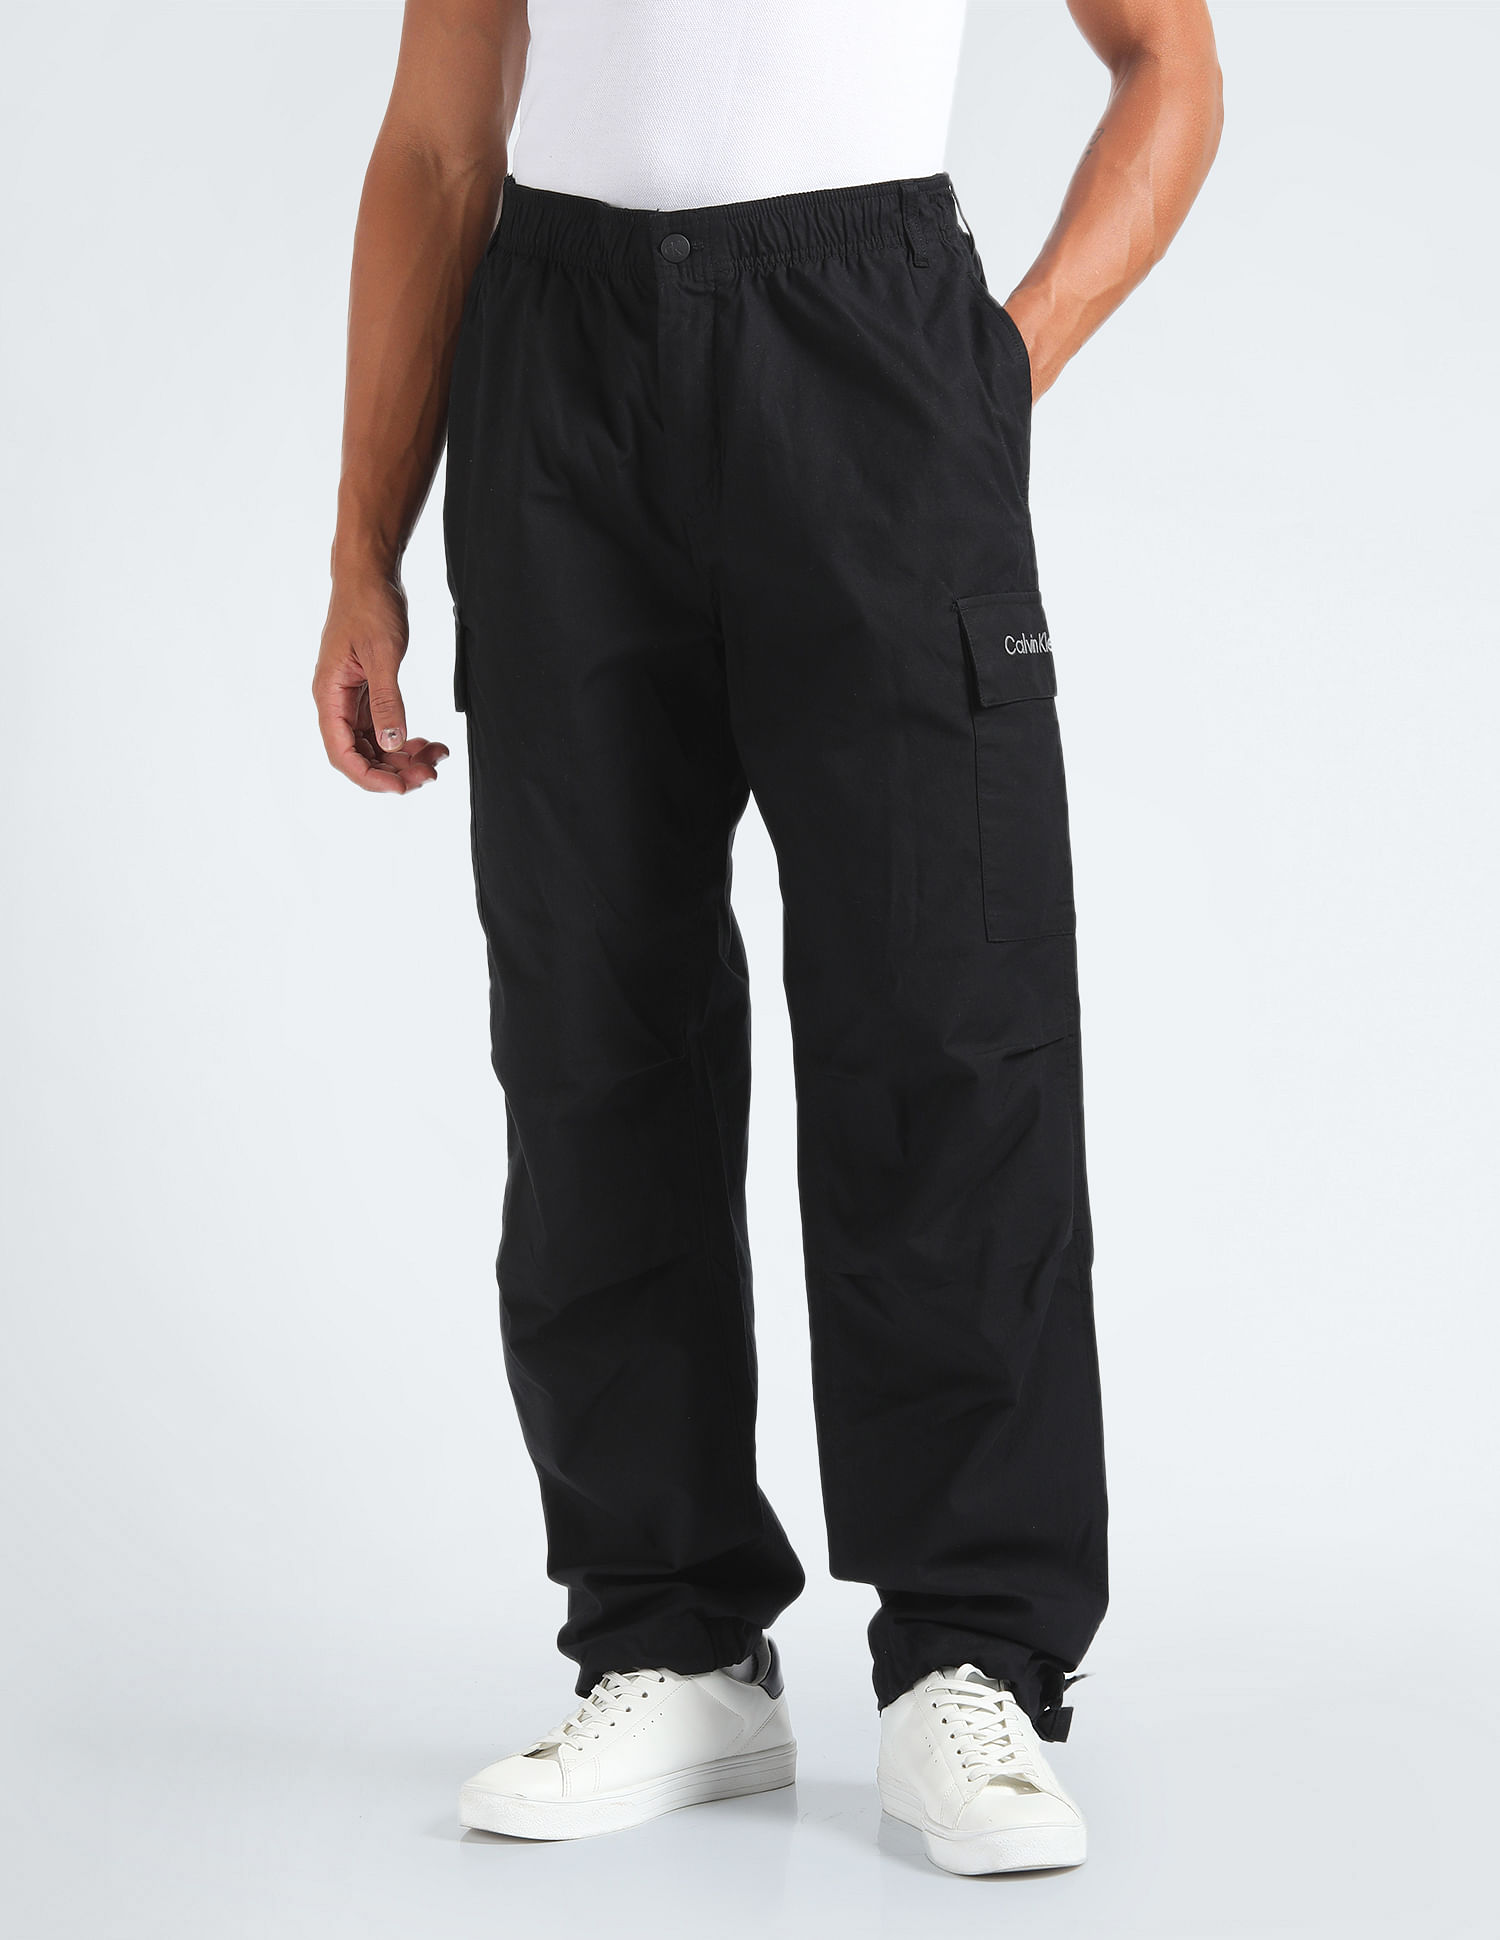 Calvin Klein Cotton Trousers | Calvin klein, Calvin, Clothes design